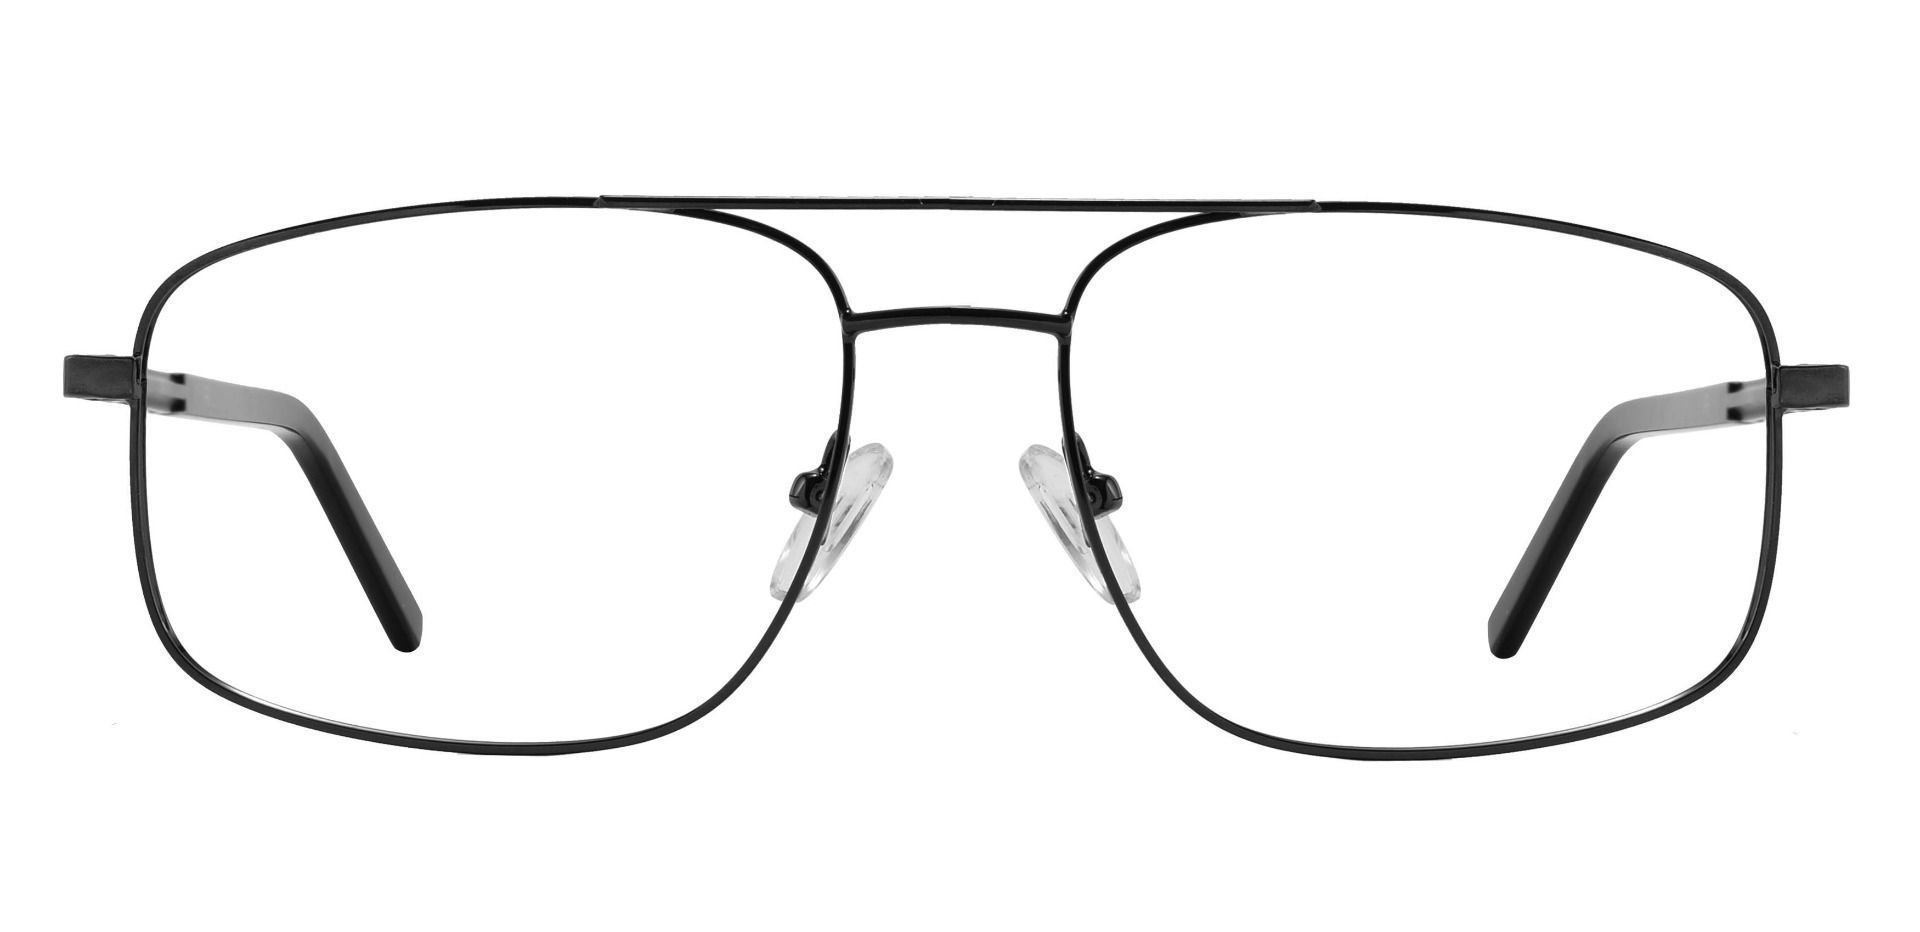 Davenport Aviator Non-Rx Glasses - Black